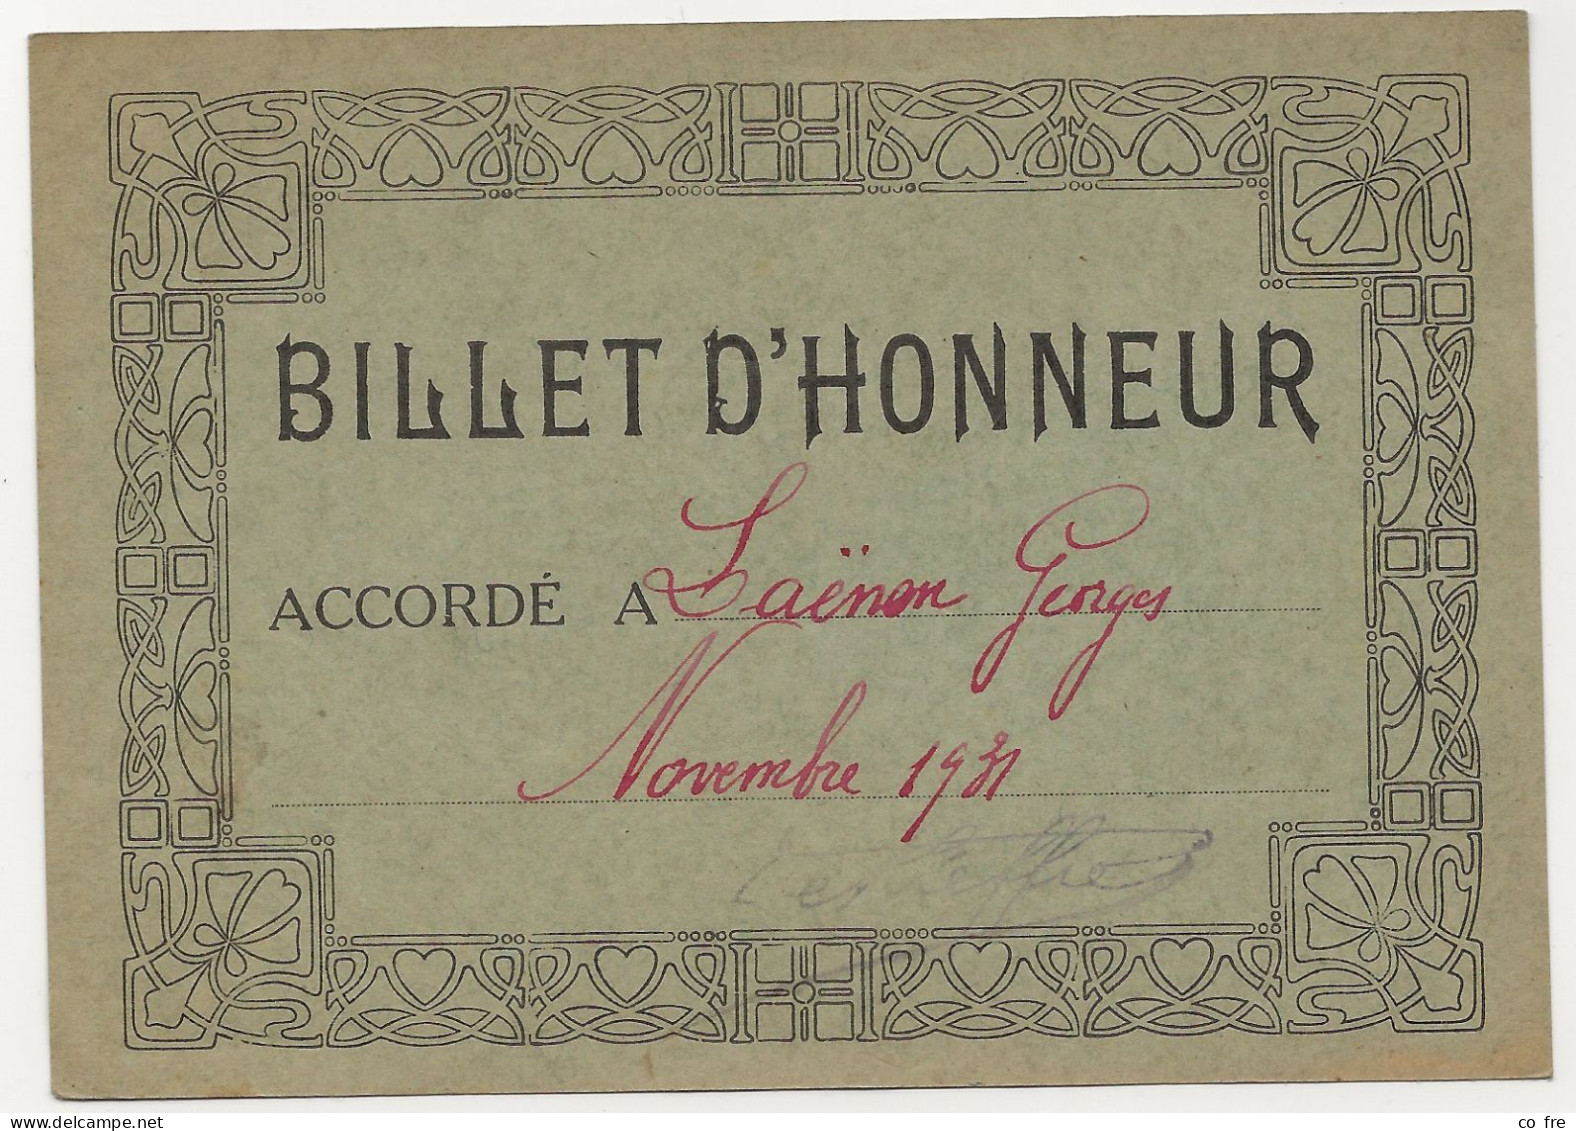 Billet D'honneur De 1931 Pour G. Laenens - Diplômes & Bulletins Scolaires